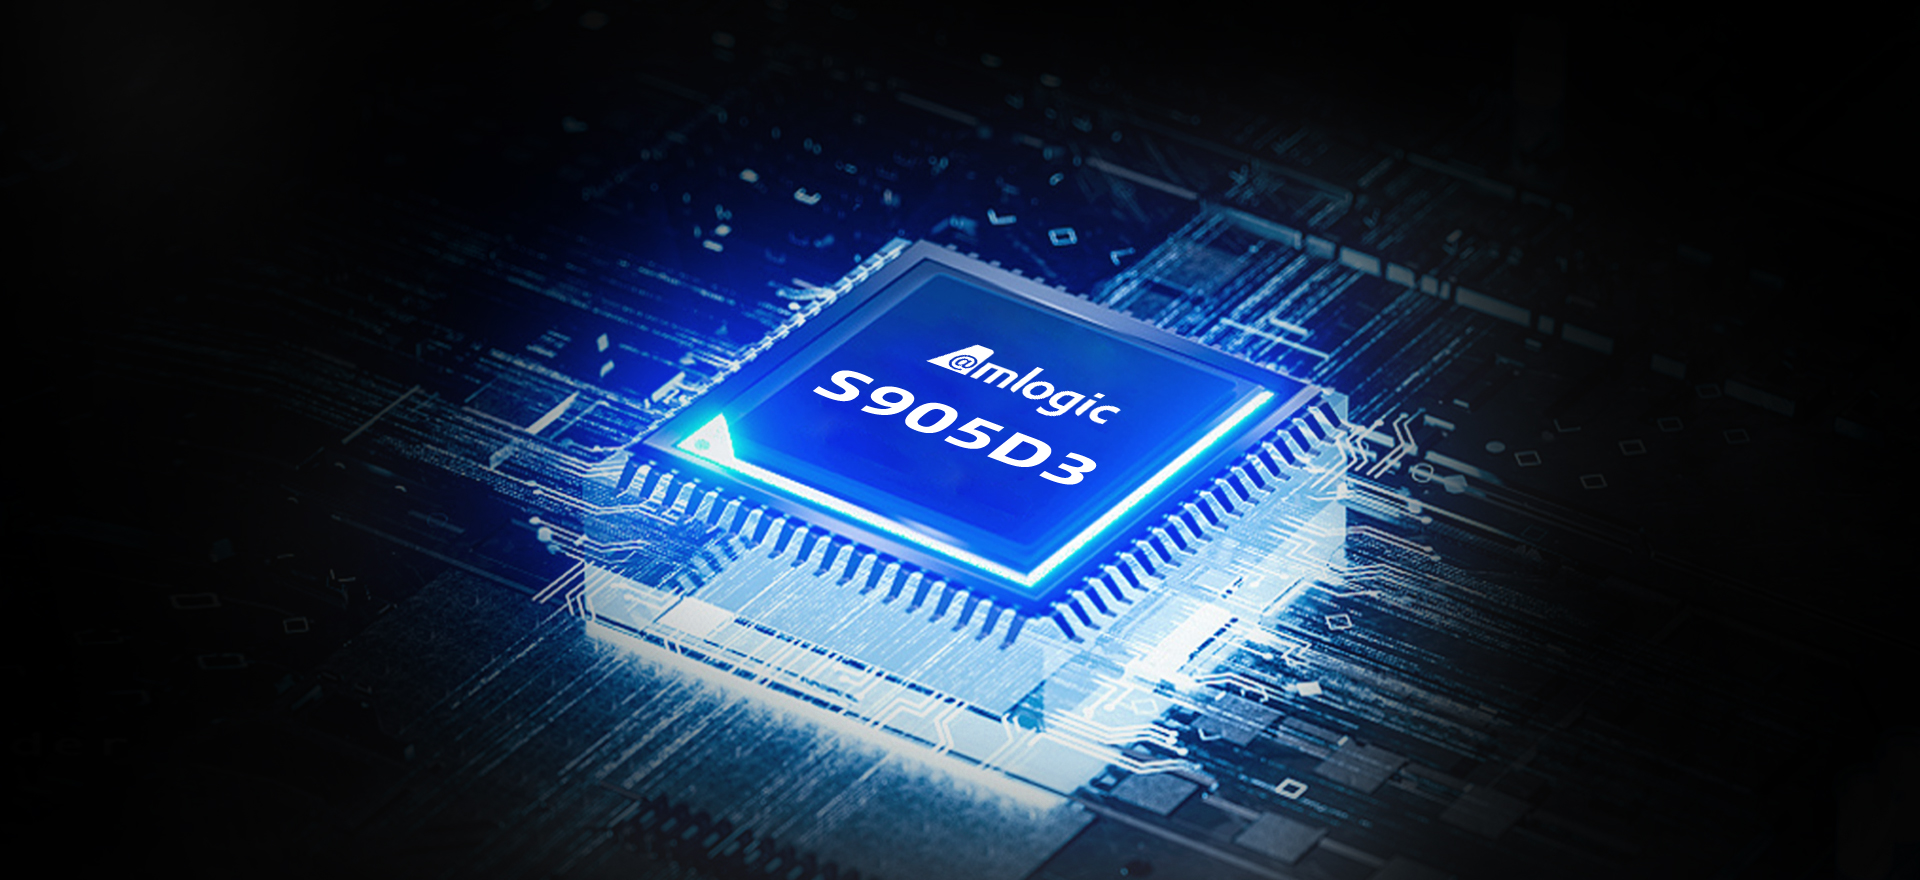 VS-D3 S905D3 Chip